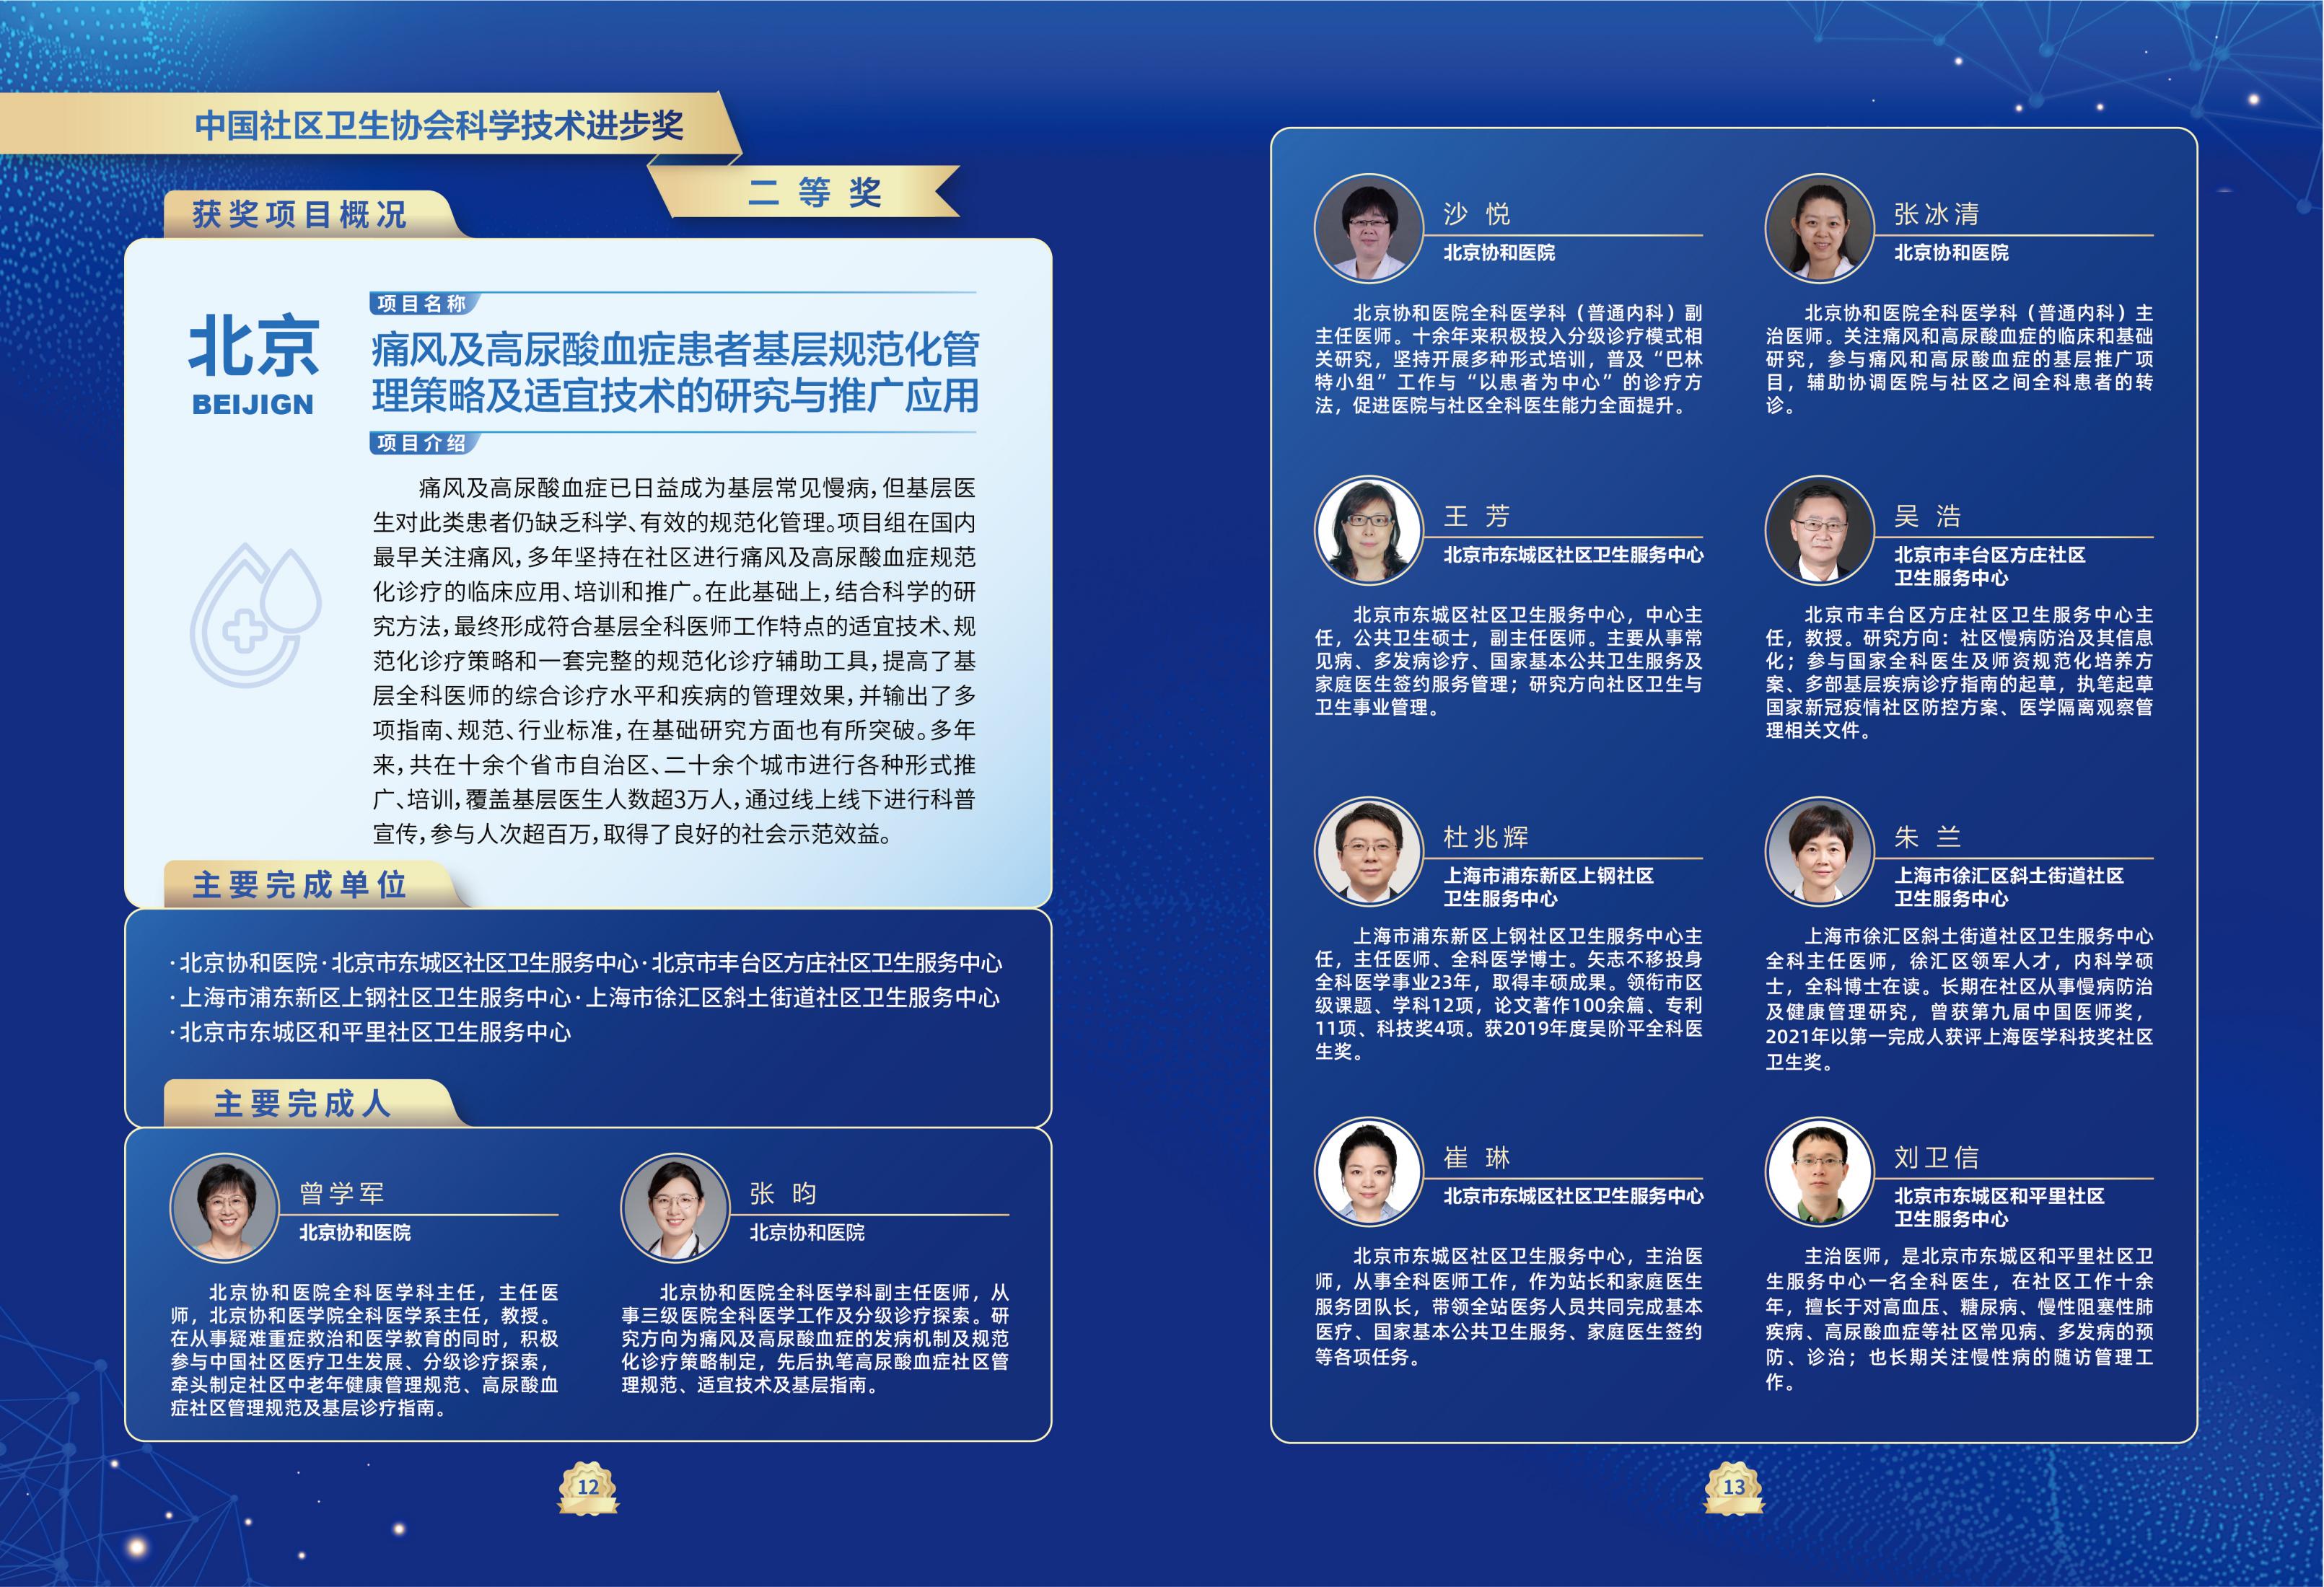 第一届中国社区卫生协会科学技术奖奖励名单_09